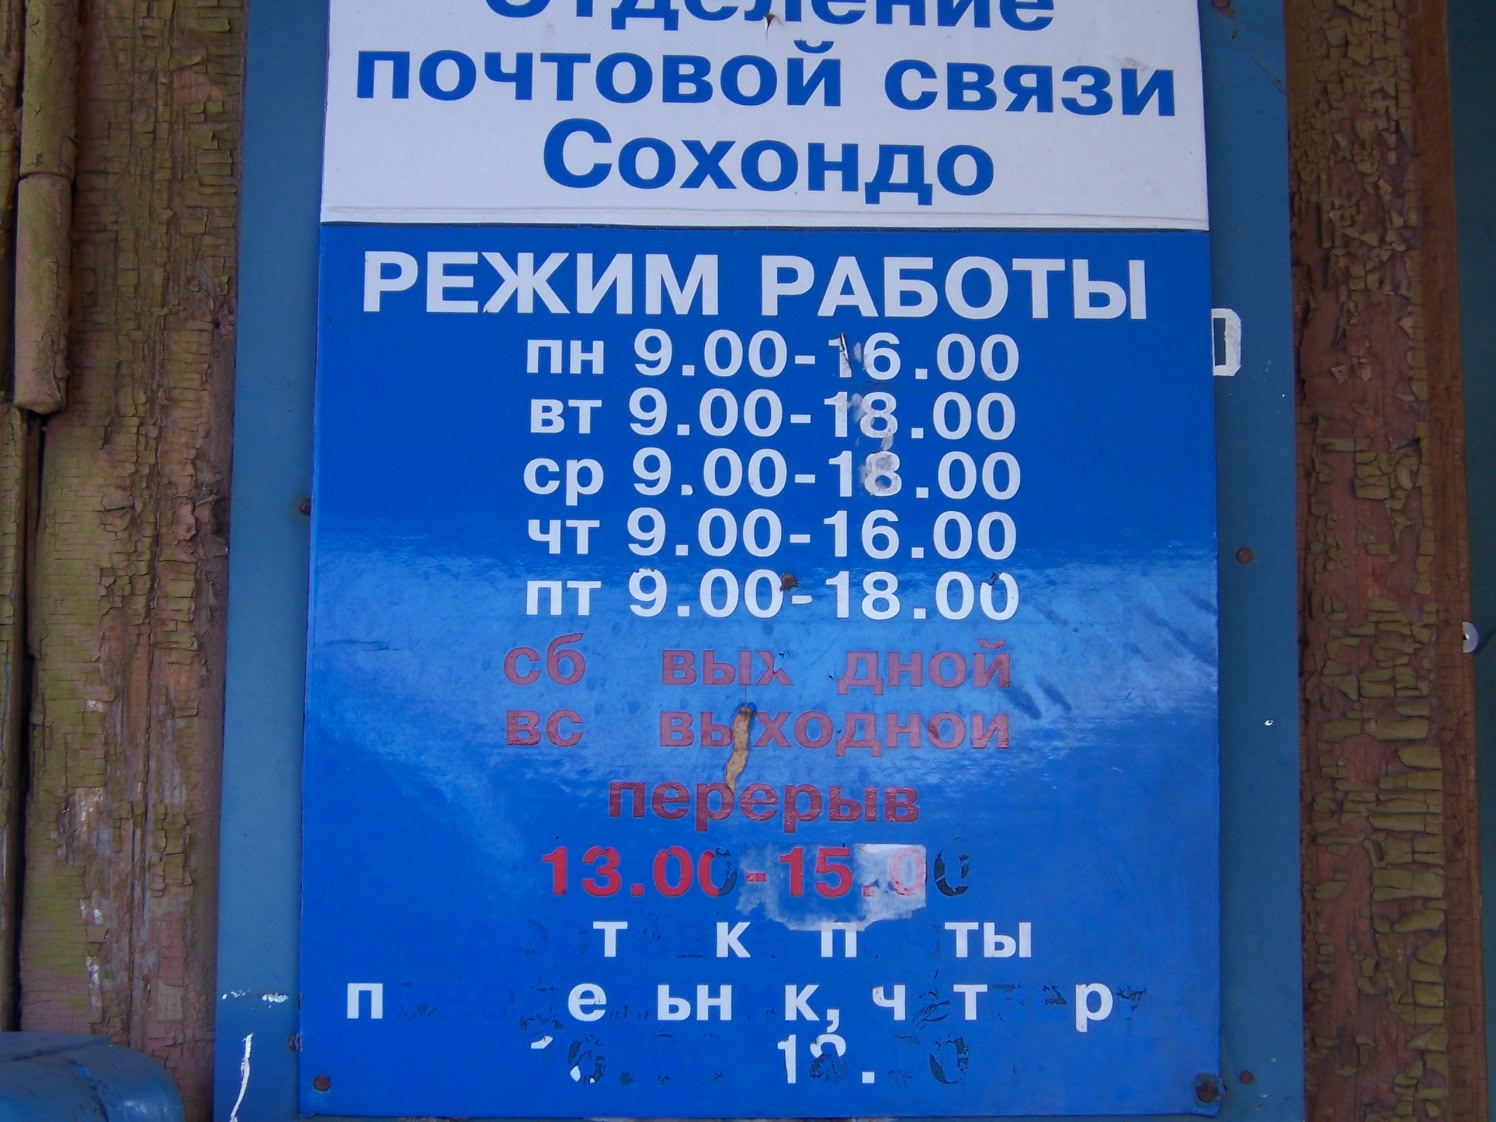 ВХОД, отделение почтовой связи 672550, Забайкальский край, Читинский р-он, Сохондо